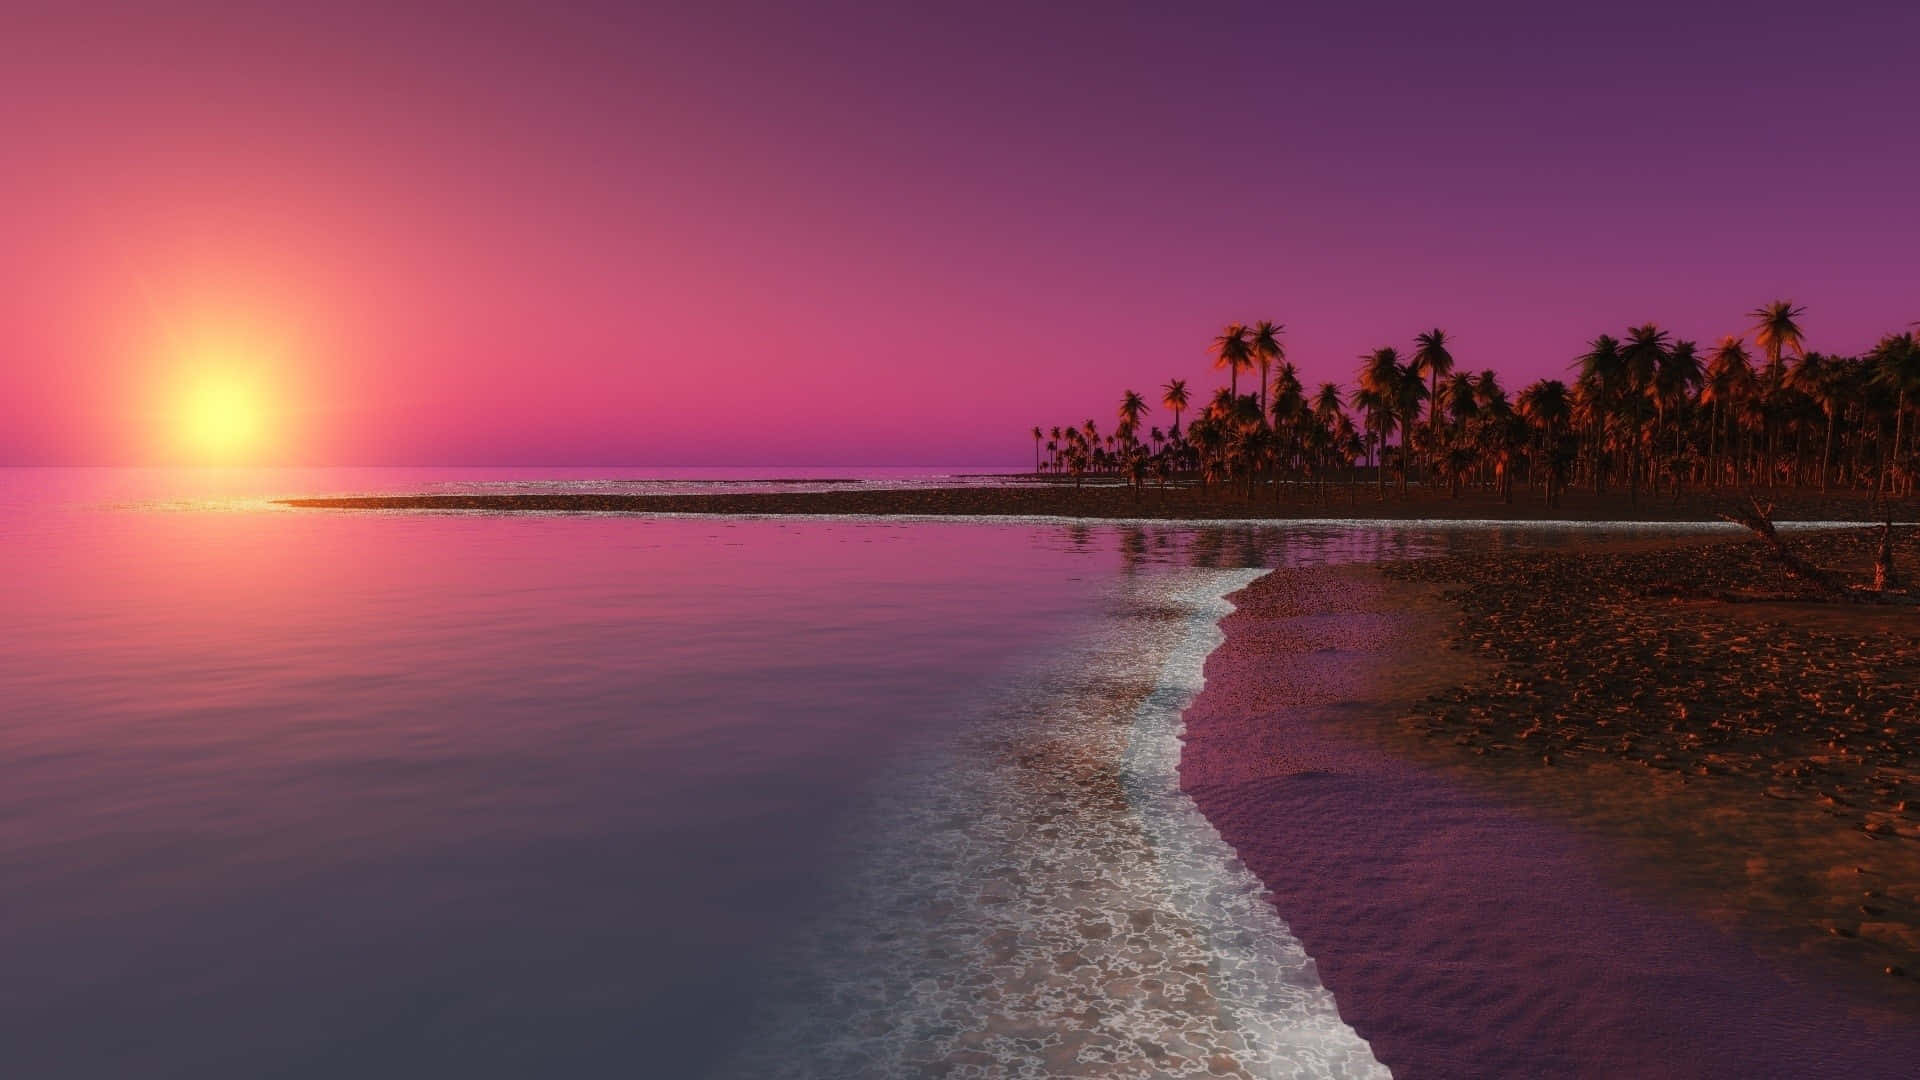 Enjoy the calming beauty of a pink beach sunset. Wallpaper